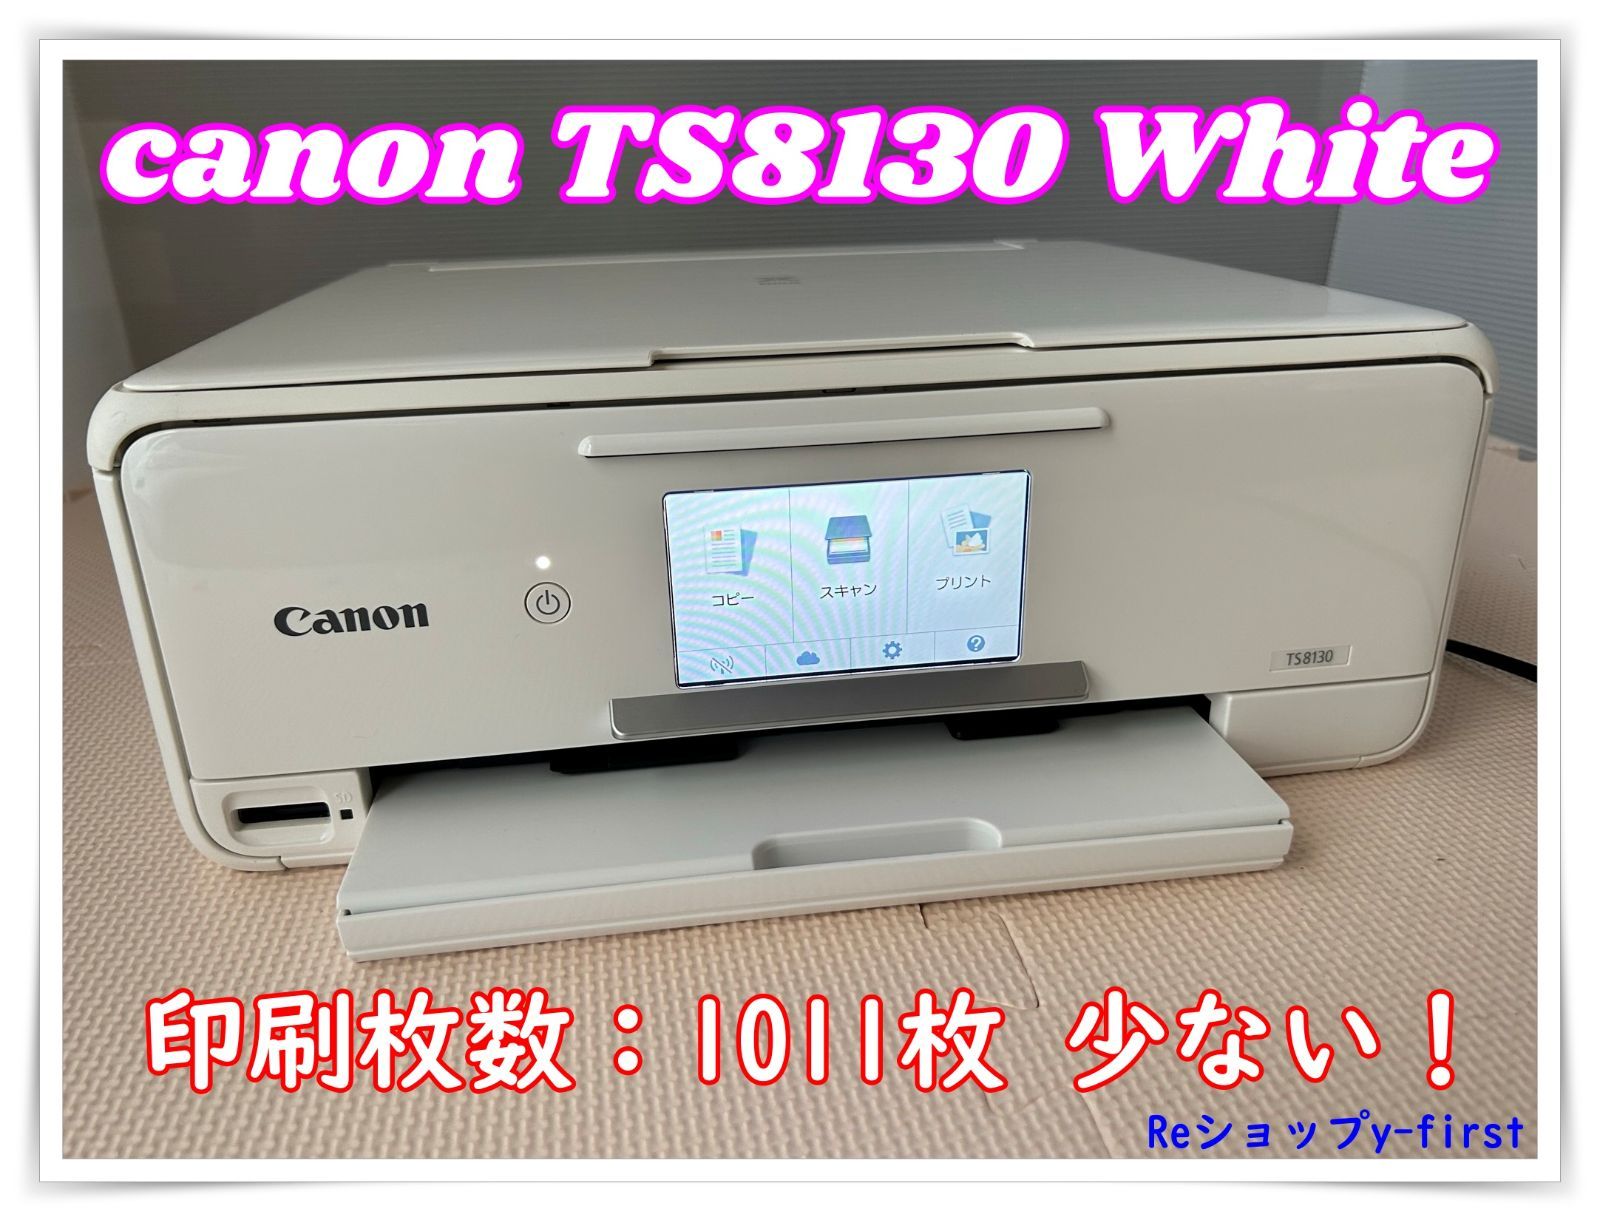 キヤノン インクジェット複合機TS8130 WHITE PIXUSTS8130WH - 5